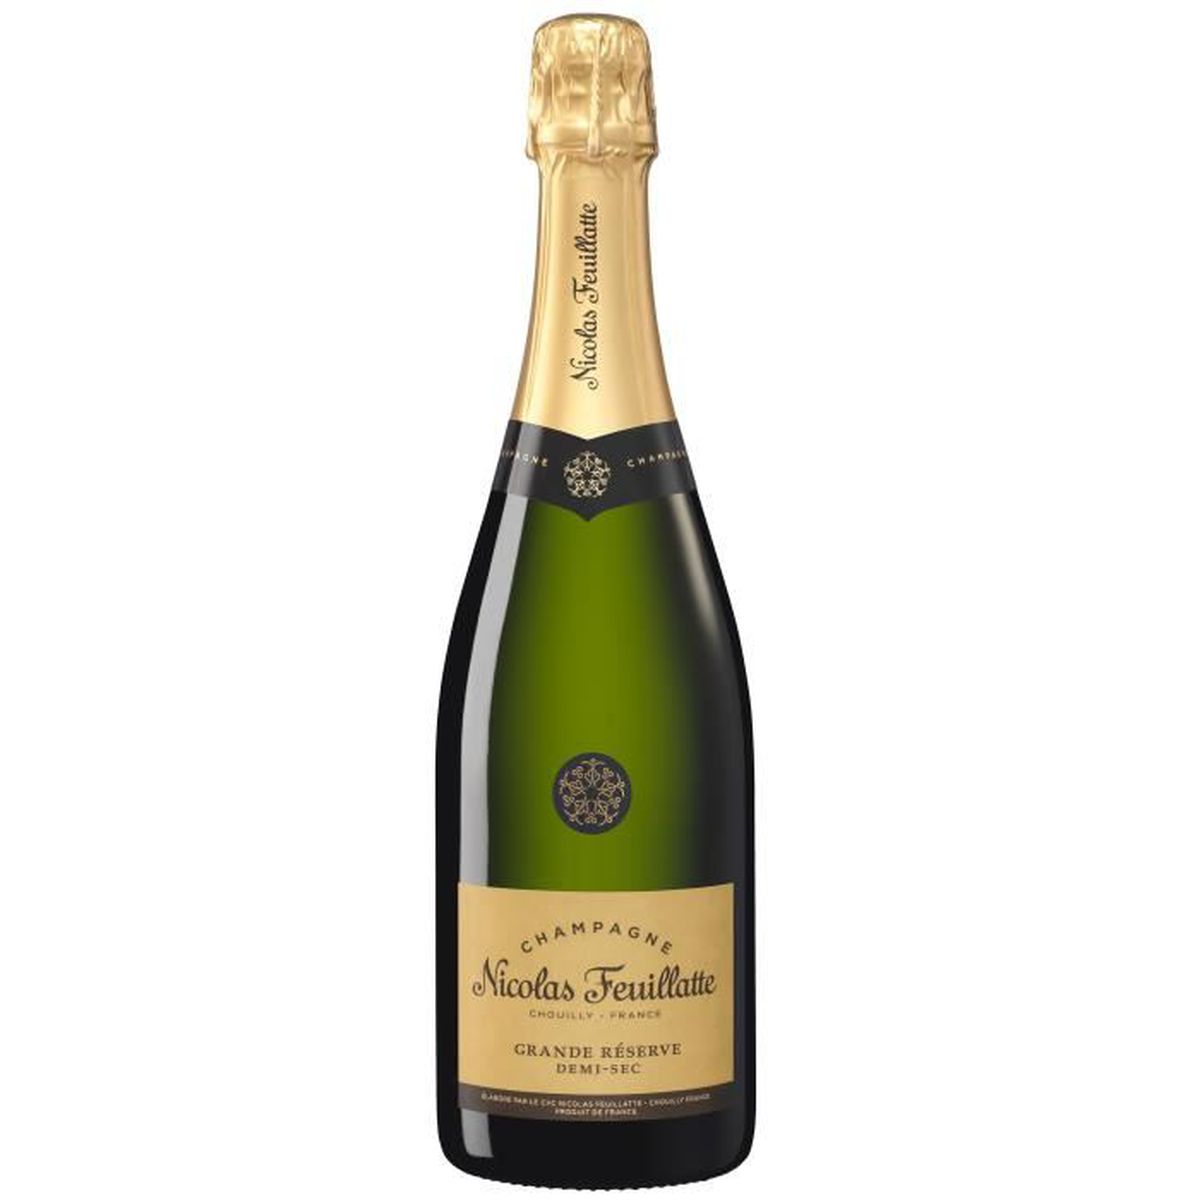 Champagne Nicolas Feuillatte Demi-Sec Grande Réserve, 75cl